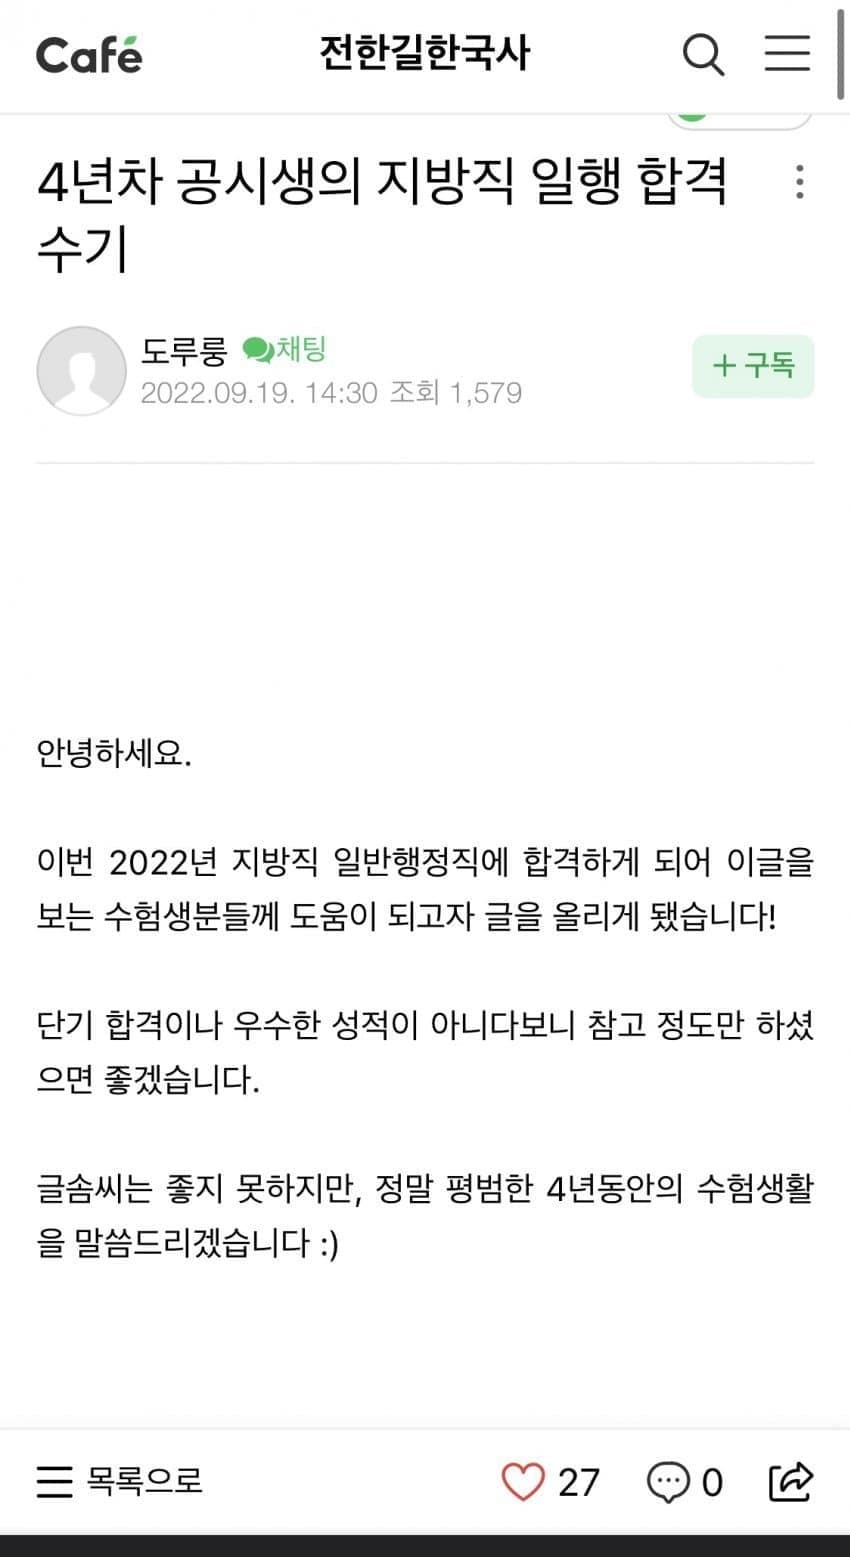 걍 9급은 이걸로 논쟁끝내기가능 - 7급 공무원(드라마) 갤러리